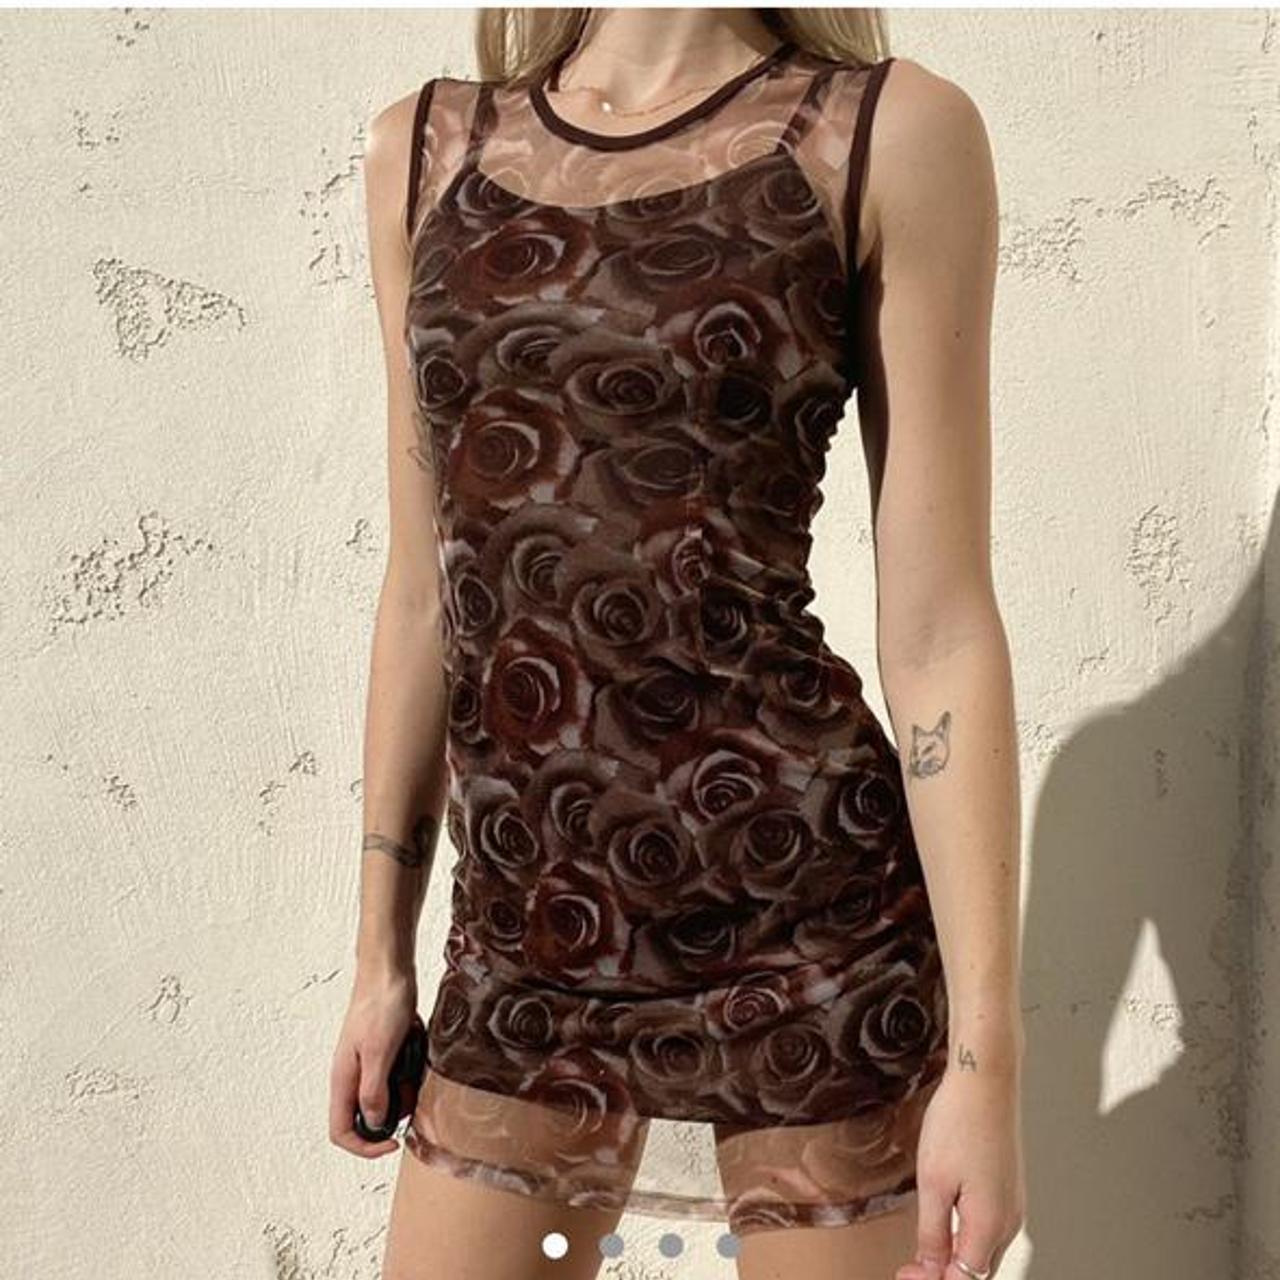 Super adorable 90s brown mesh floral dress in... - Depop